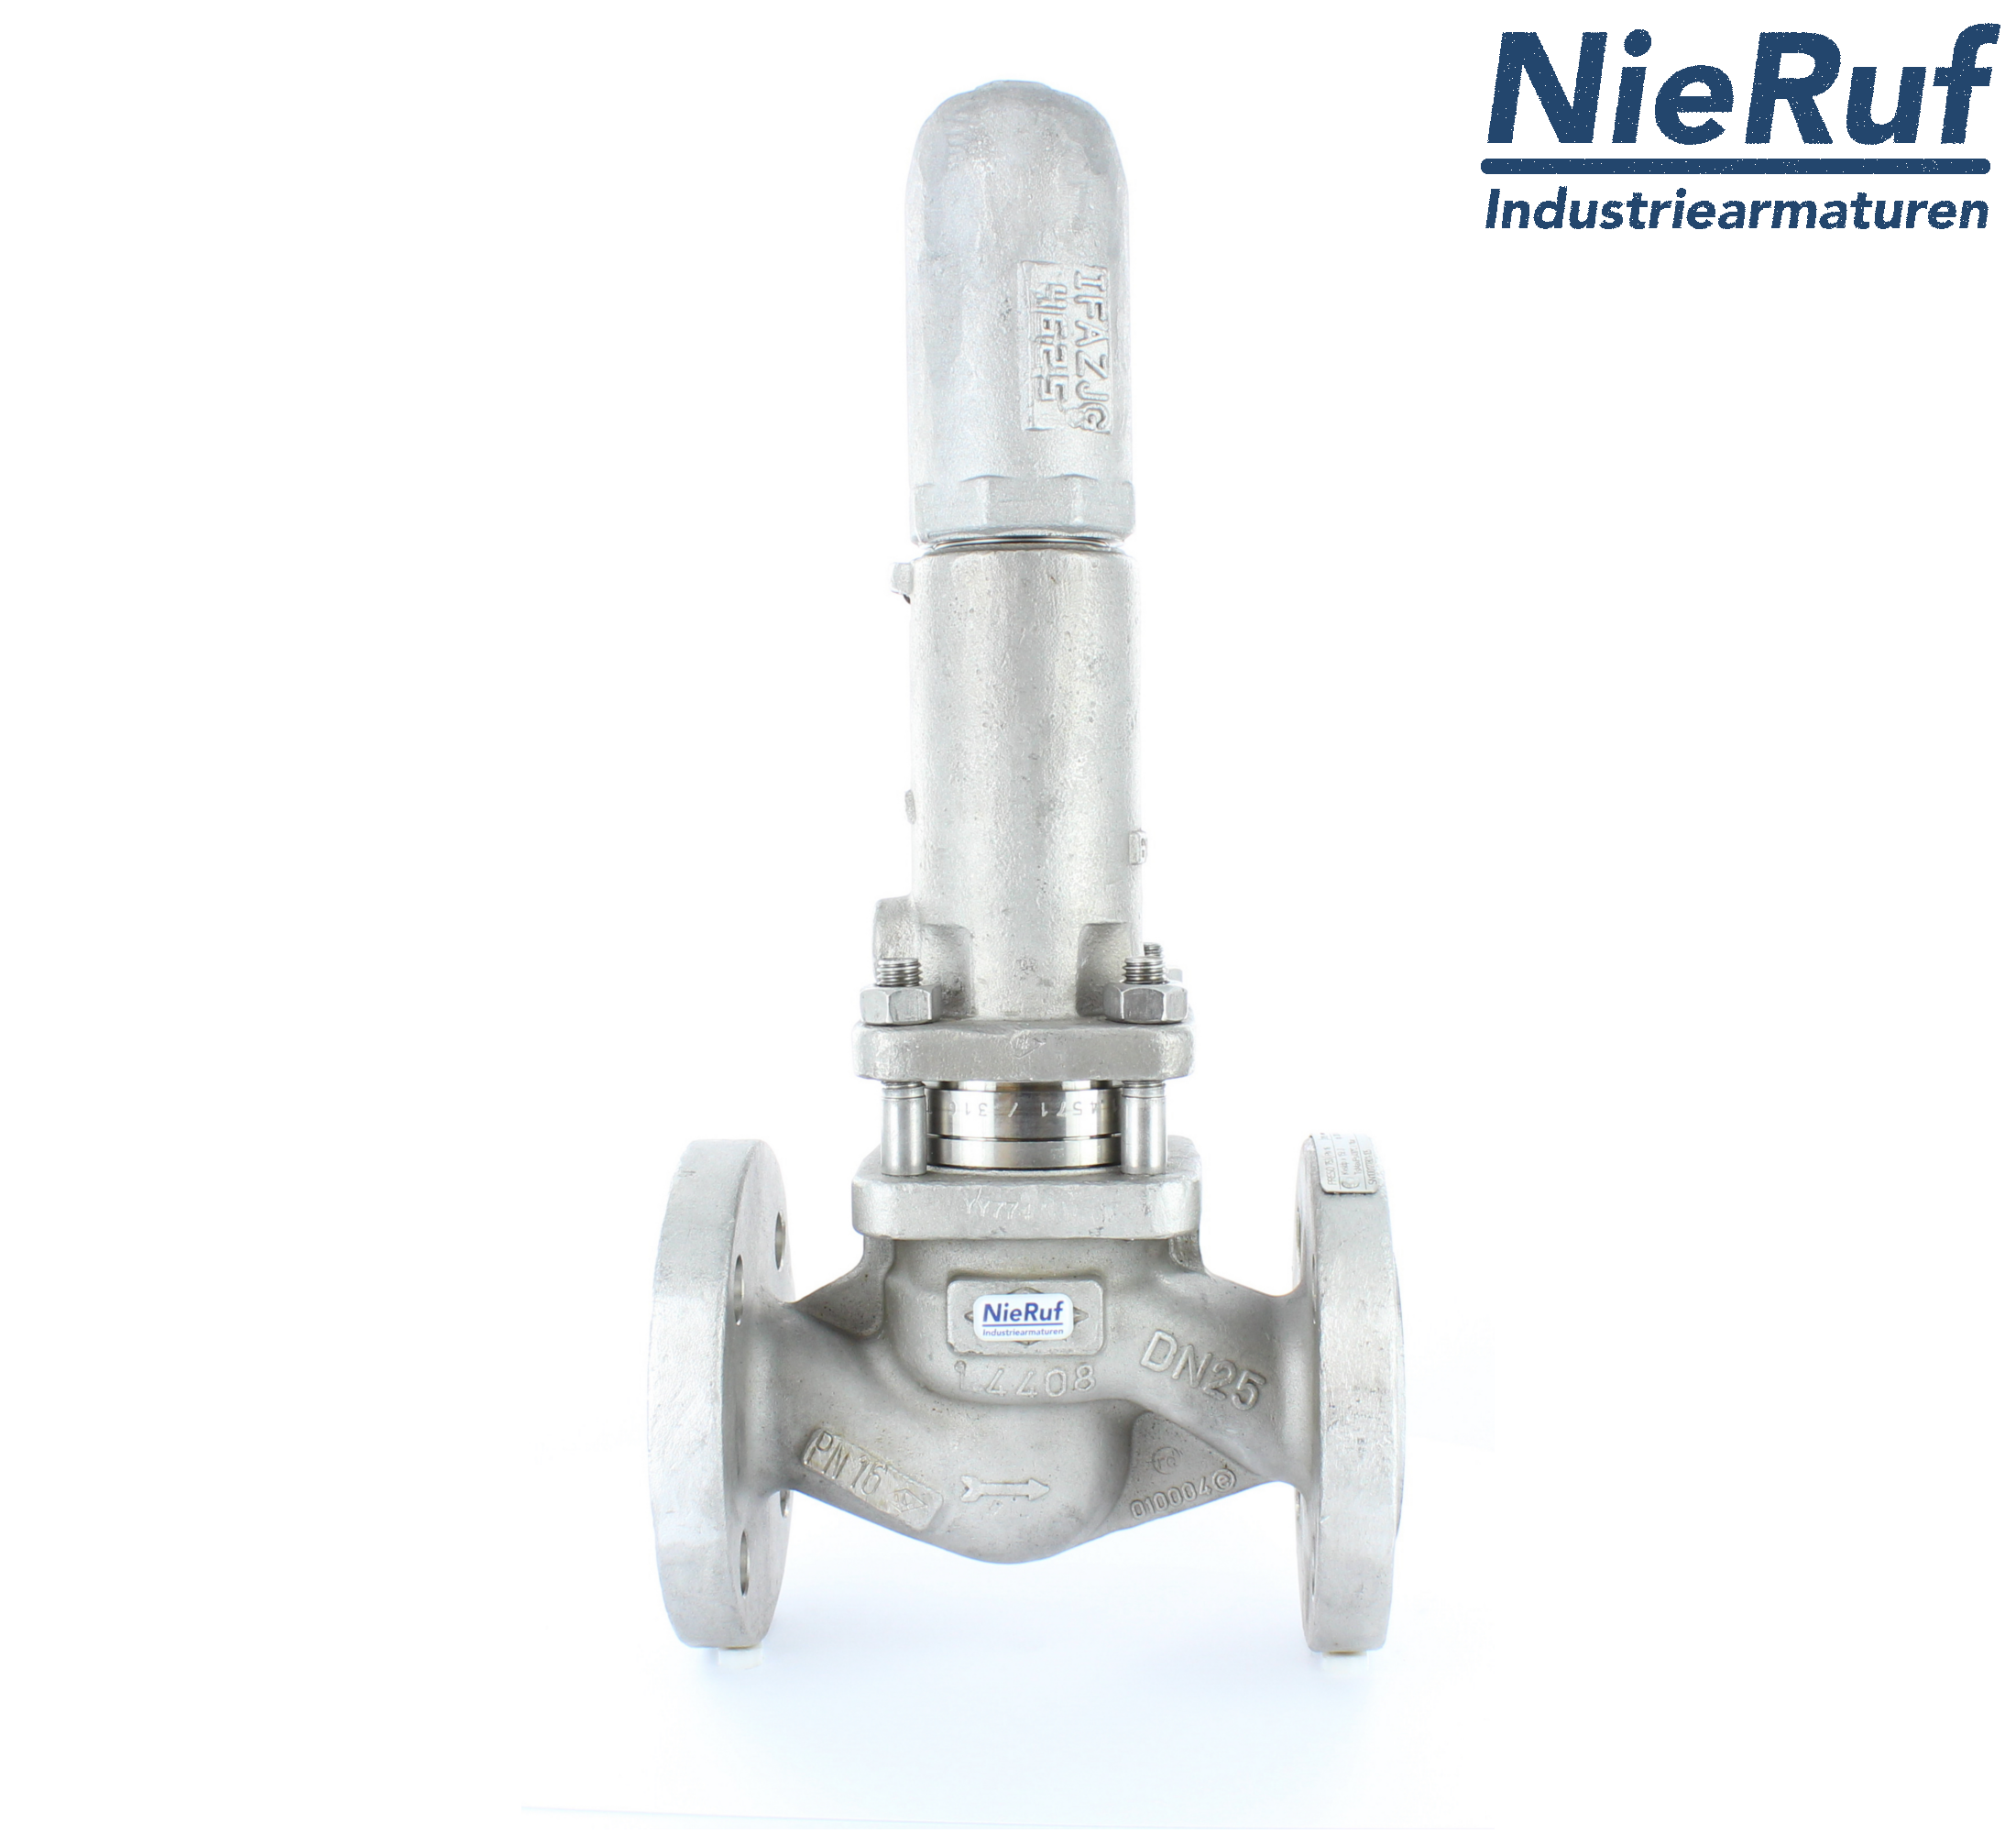 piston overflow valve DN 32 UV13 cast iron 1.0619+N 1,0 - 3,0 bar